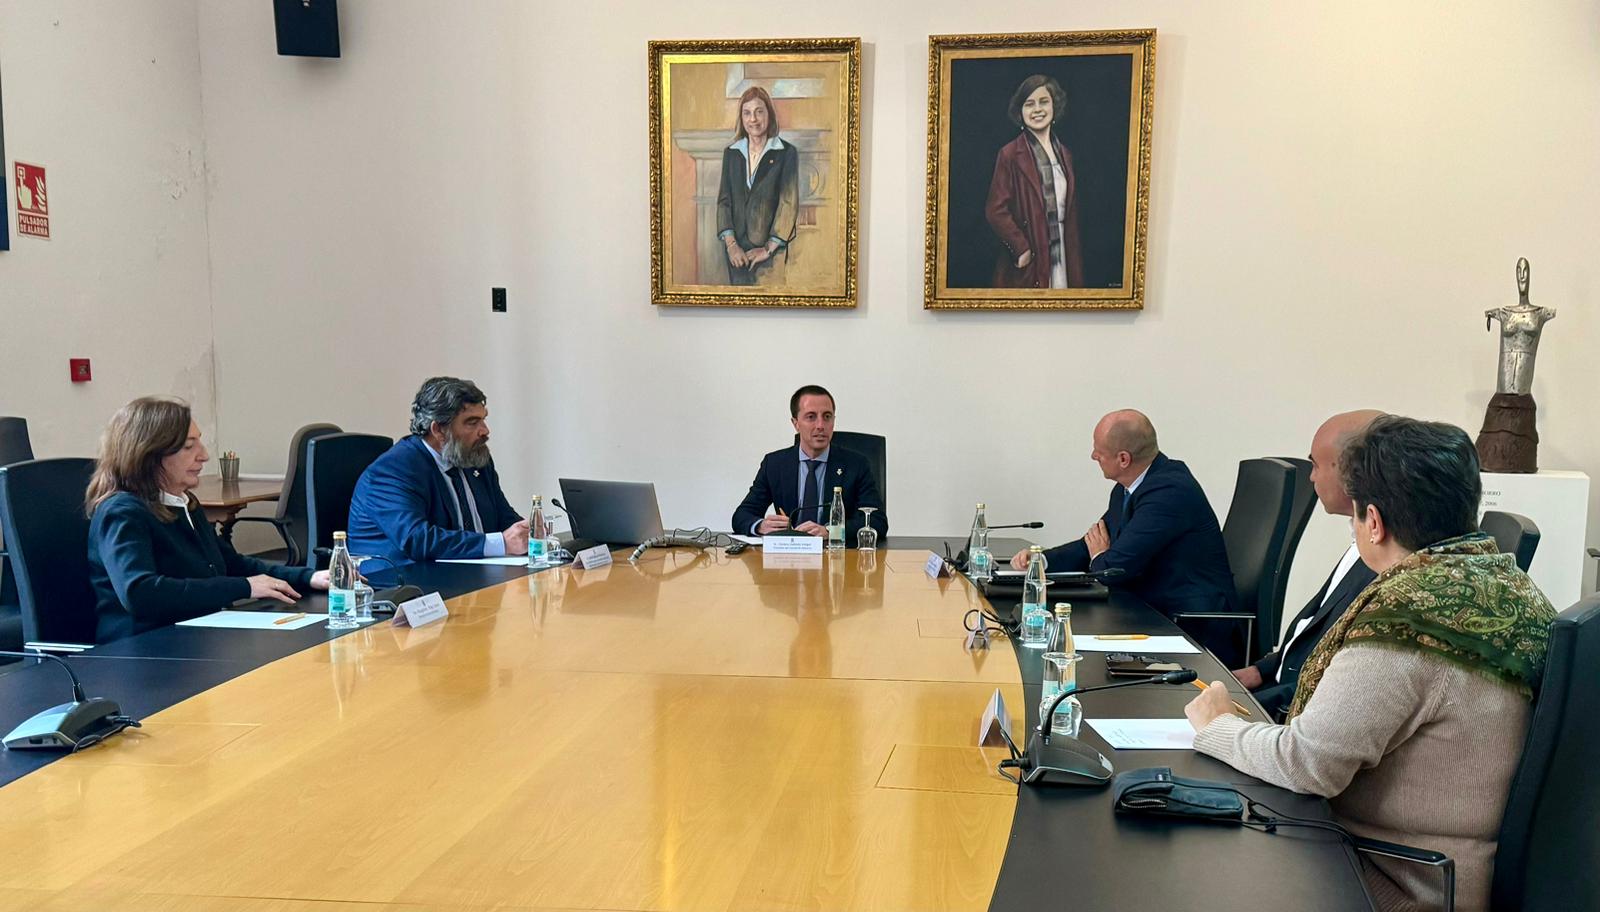 Reunió del Consell de Mallorca amb MAC Insular i l'Ajuntament de Bunyola.